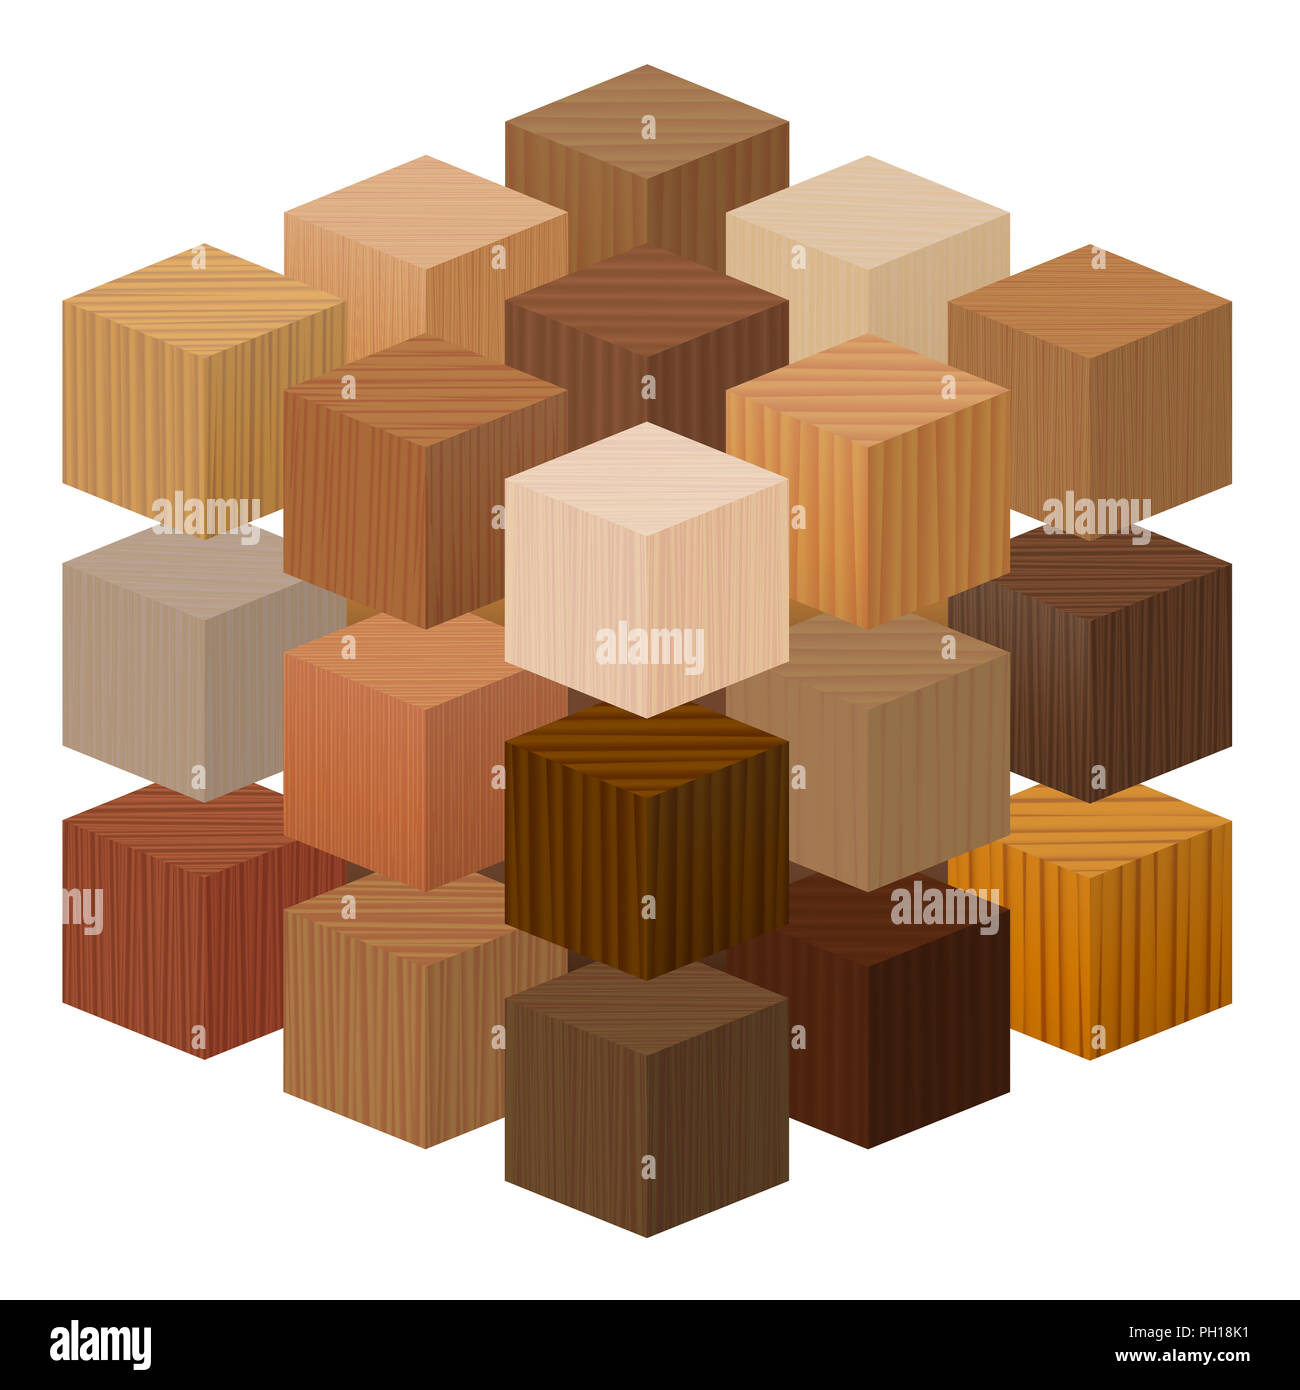 Holzwürfel bilden einen großen künstlerischen Zimmerei - Holz Proben mit verschiedenen Texturen, Farben, Lasuren, aus verschiedenen Bäumen. Stockfoto